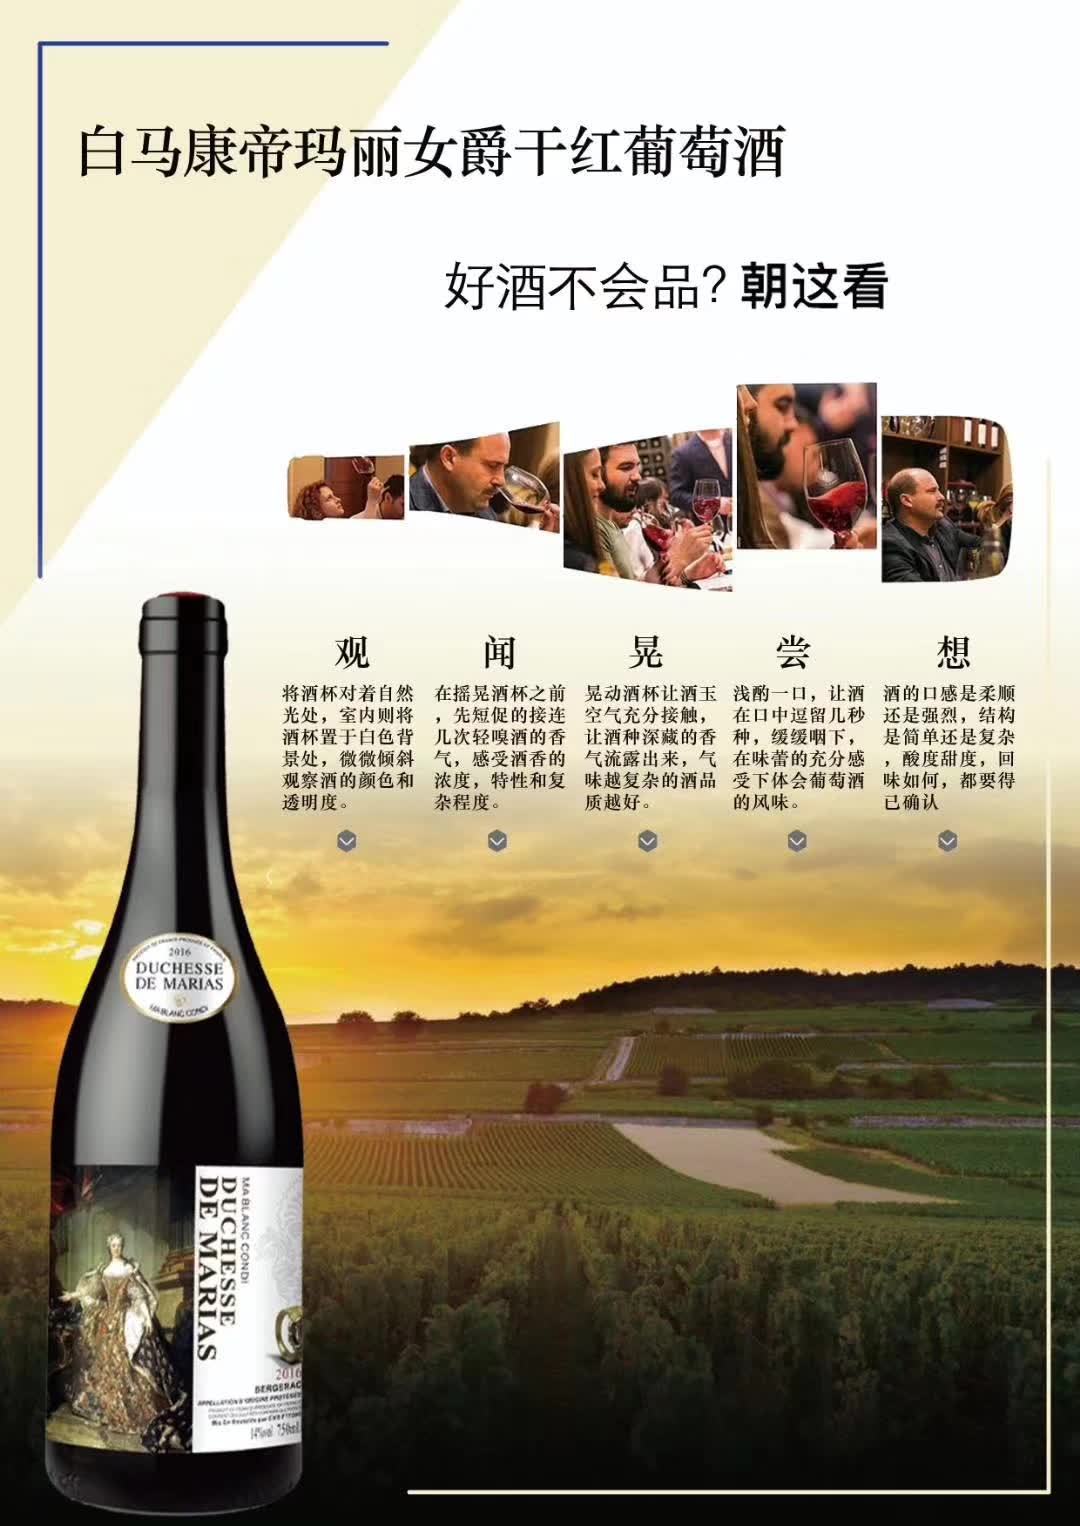 上海万耀白马康帝酒庄玛丽女爵贝尔热拉克产区原装进口混酿葡萄酒